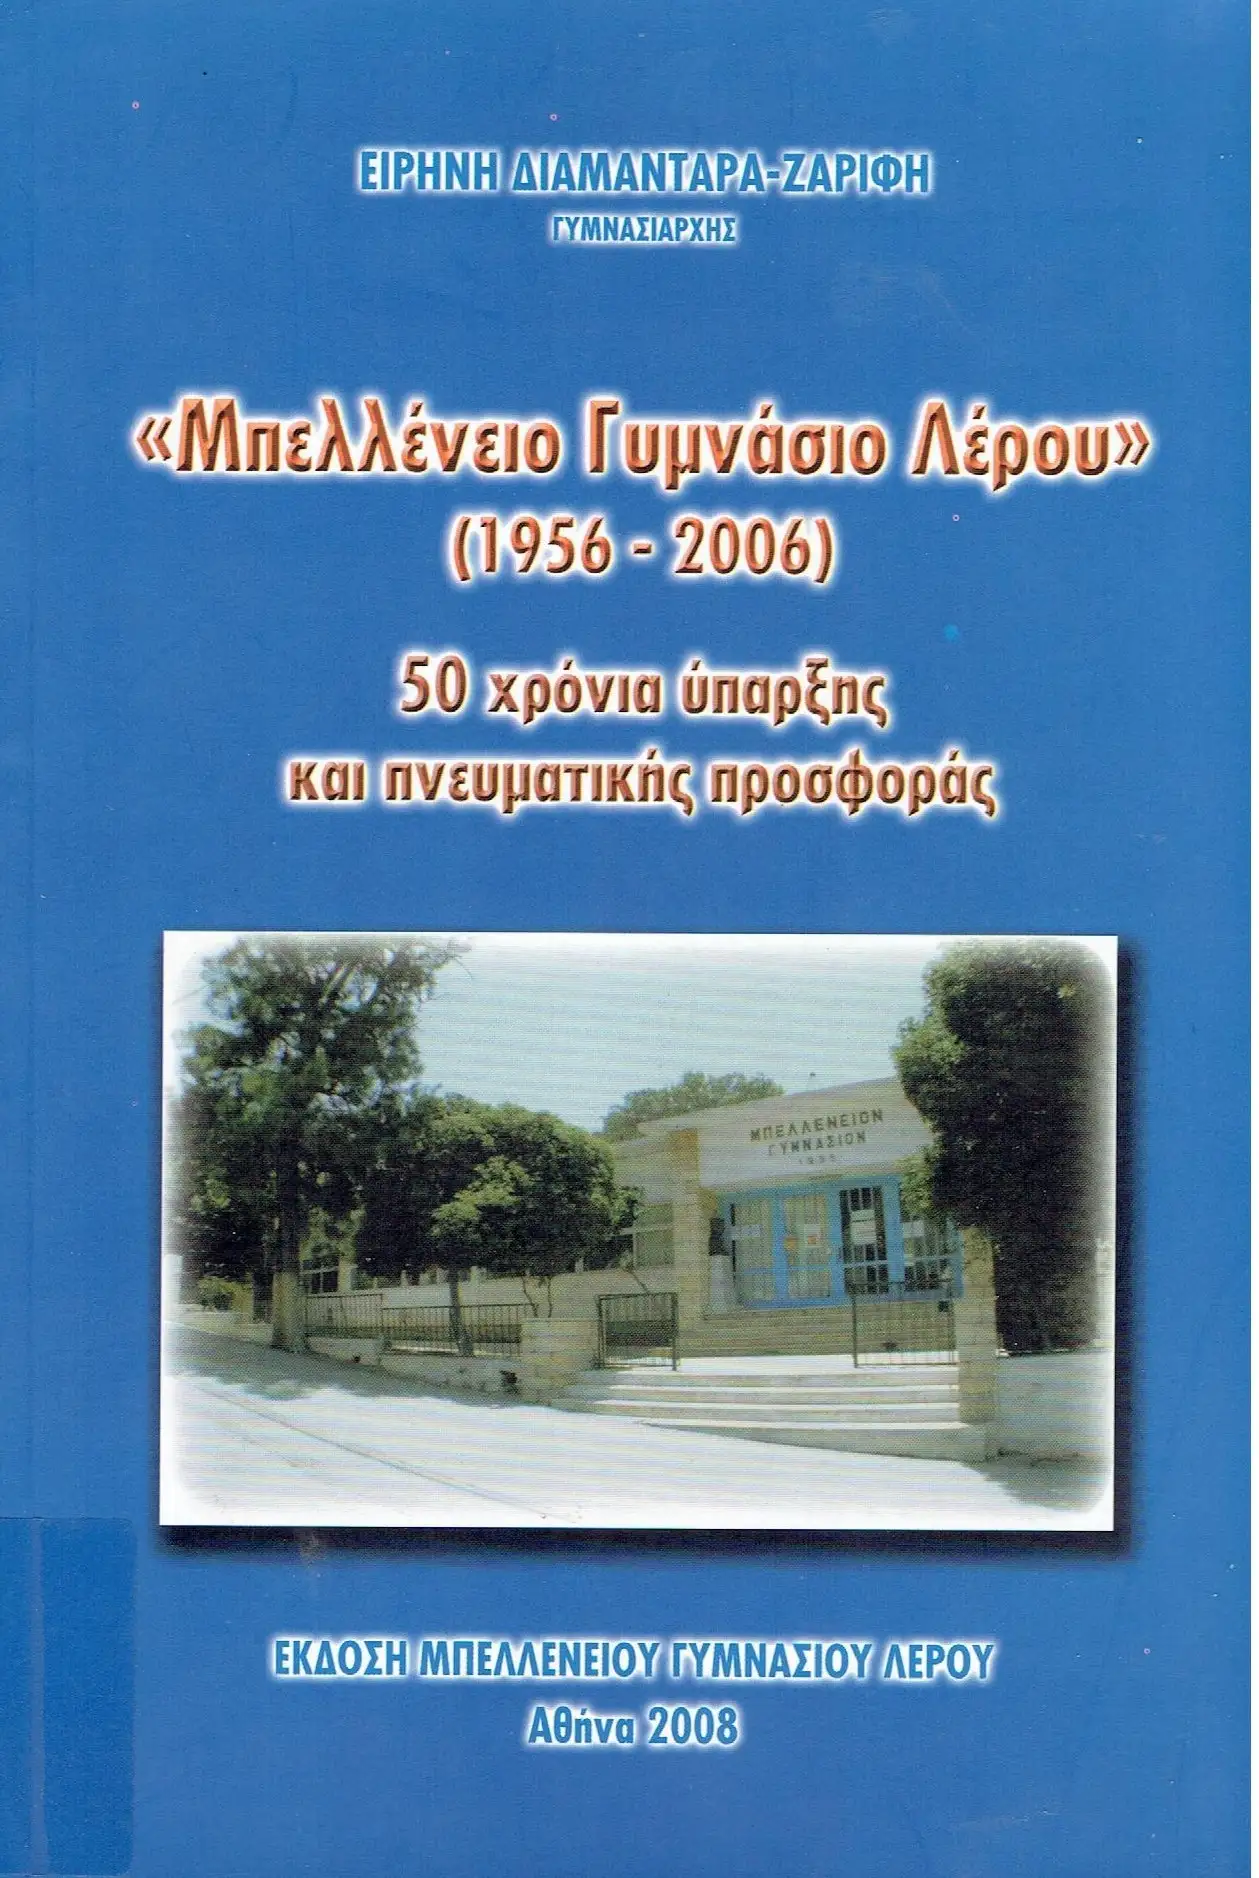 «Μπελλένειο Γυμνάσιο Λέρου» (1956-2006) 50 χρόνια ύπαρξης και πνευματικής προσφοράς                                                                                                                                       Ειρήνη Διαμαντάρα - Ζαρίφη.                                                                                                           Μπελλένειο Γυμνάσιο Λέρου,  Αθήνα 2008.